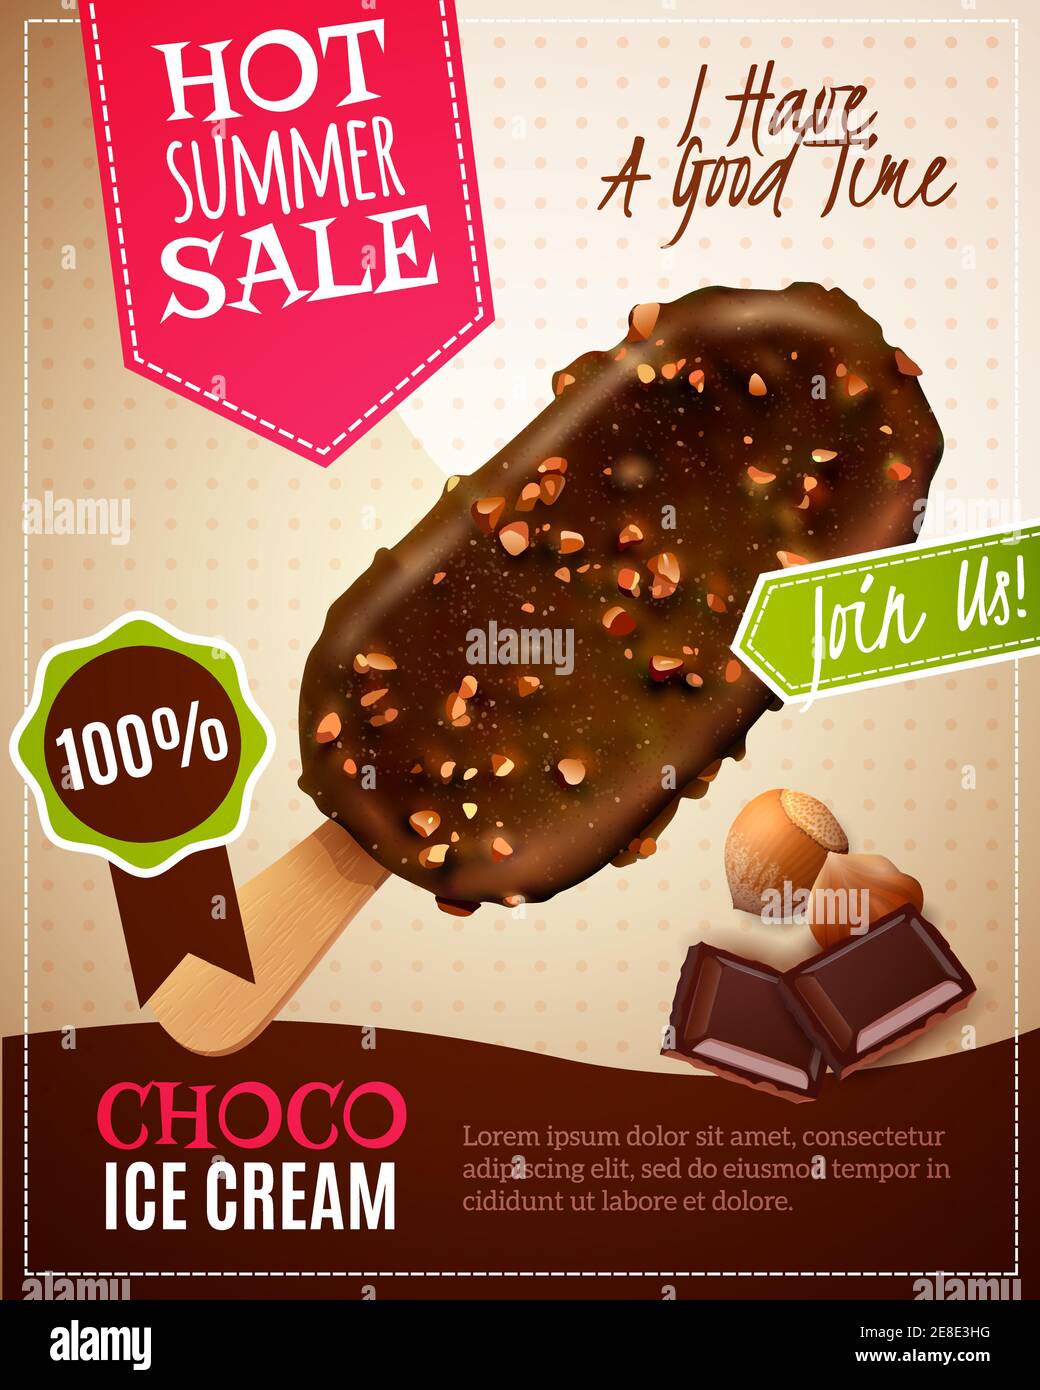 Illustration vectorielle de vente d'été de glace avec publicité de chocolat tarte esquimau aux noix dans un style réaliste Illustration de Vecteur